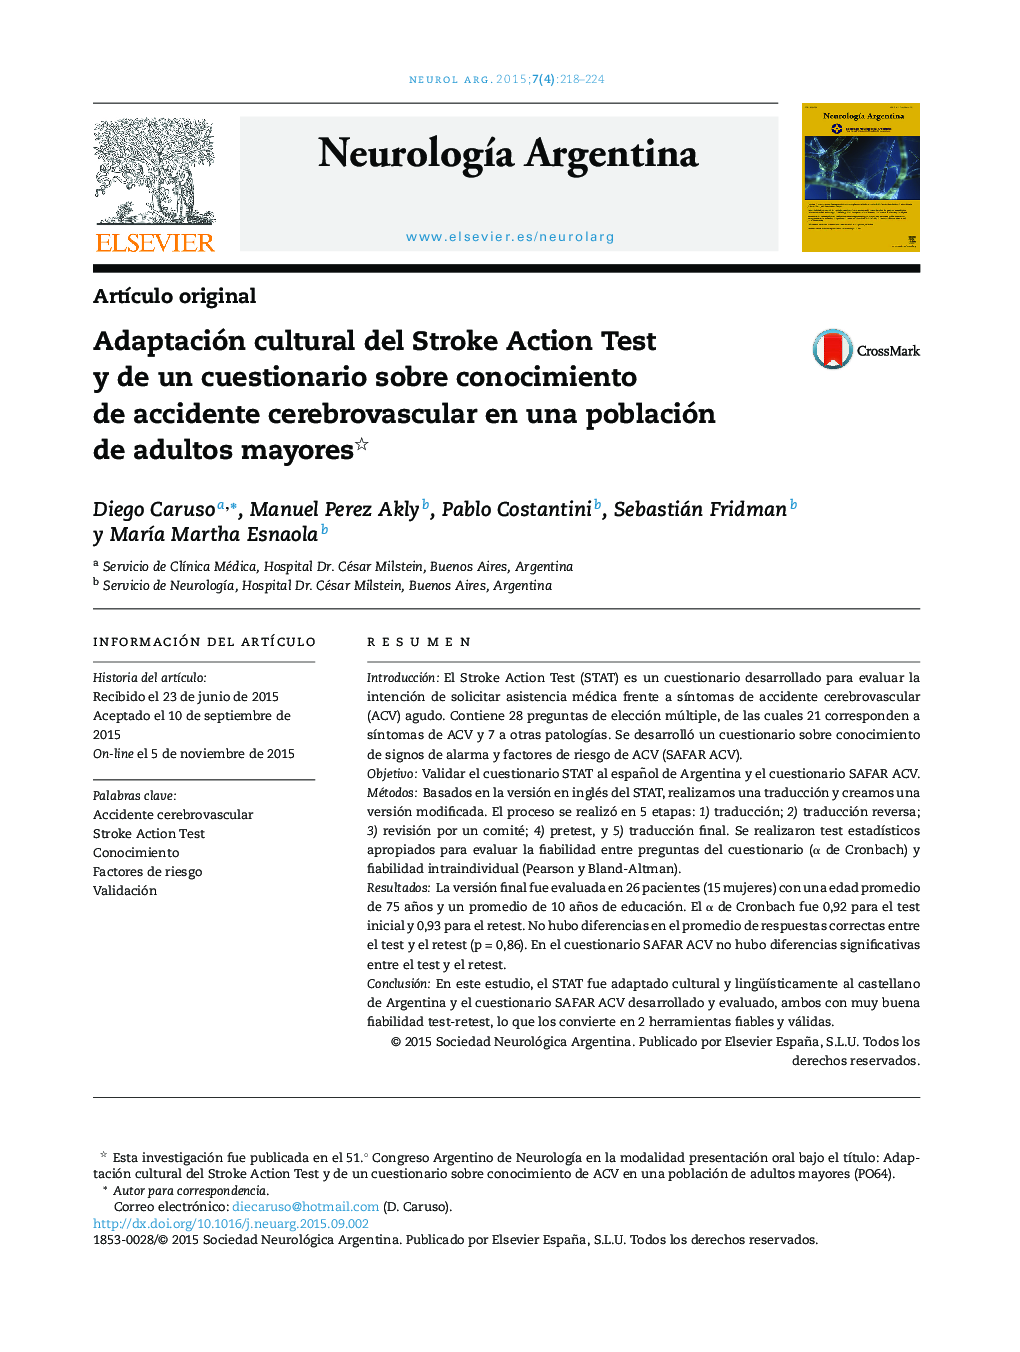 Adaptación cultural del Stroke Action Test y de un cuestionario sobre conocimiento de accidente cerebrovascular en una población de adultos mayores